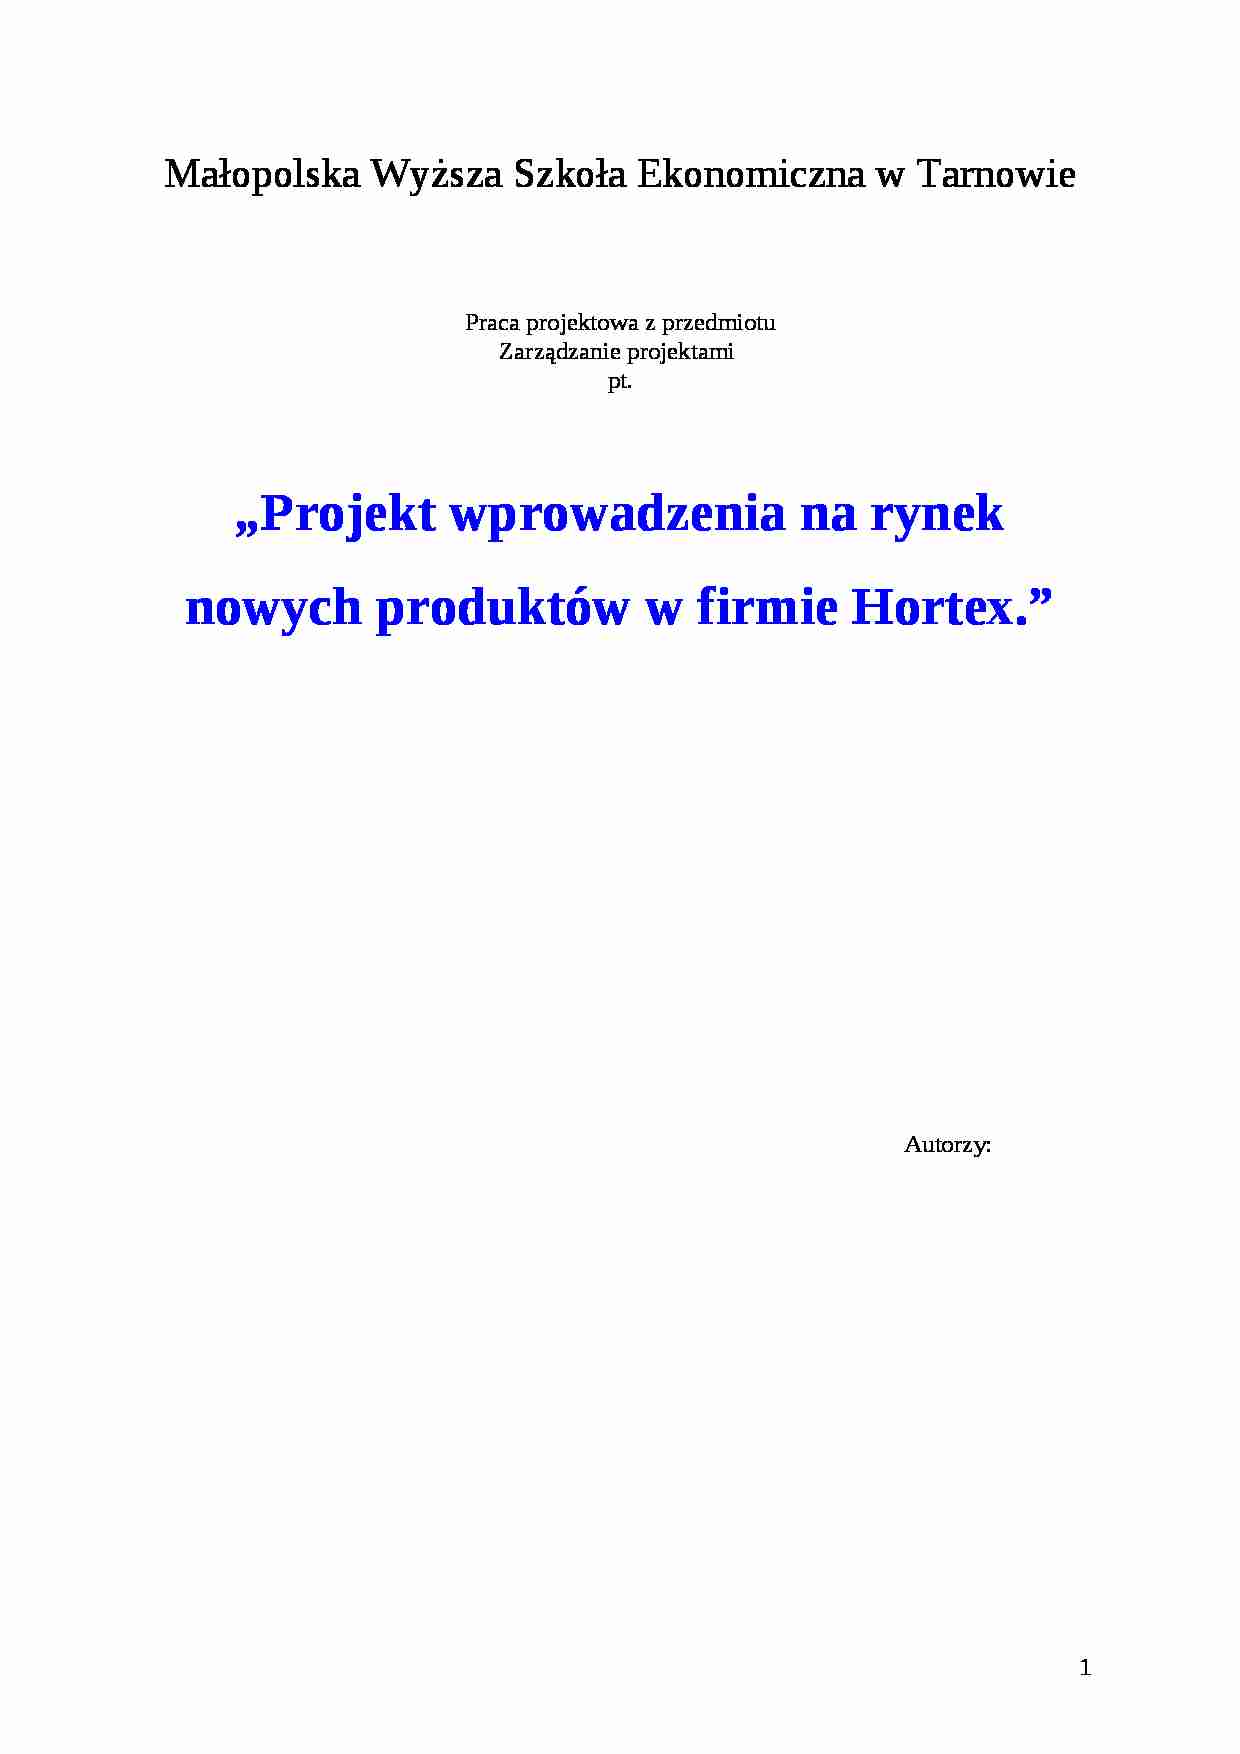 Zarządzanie projektami - praca,  Stabryła- firma Hortex - strona 1